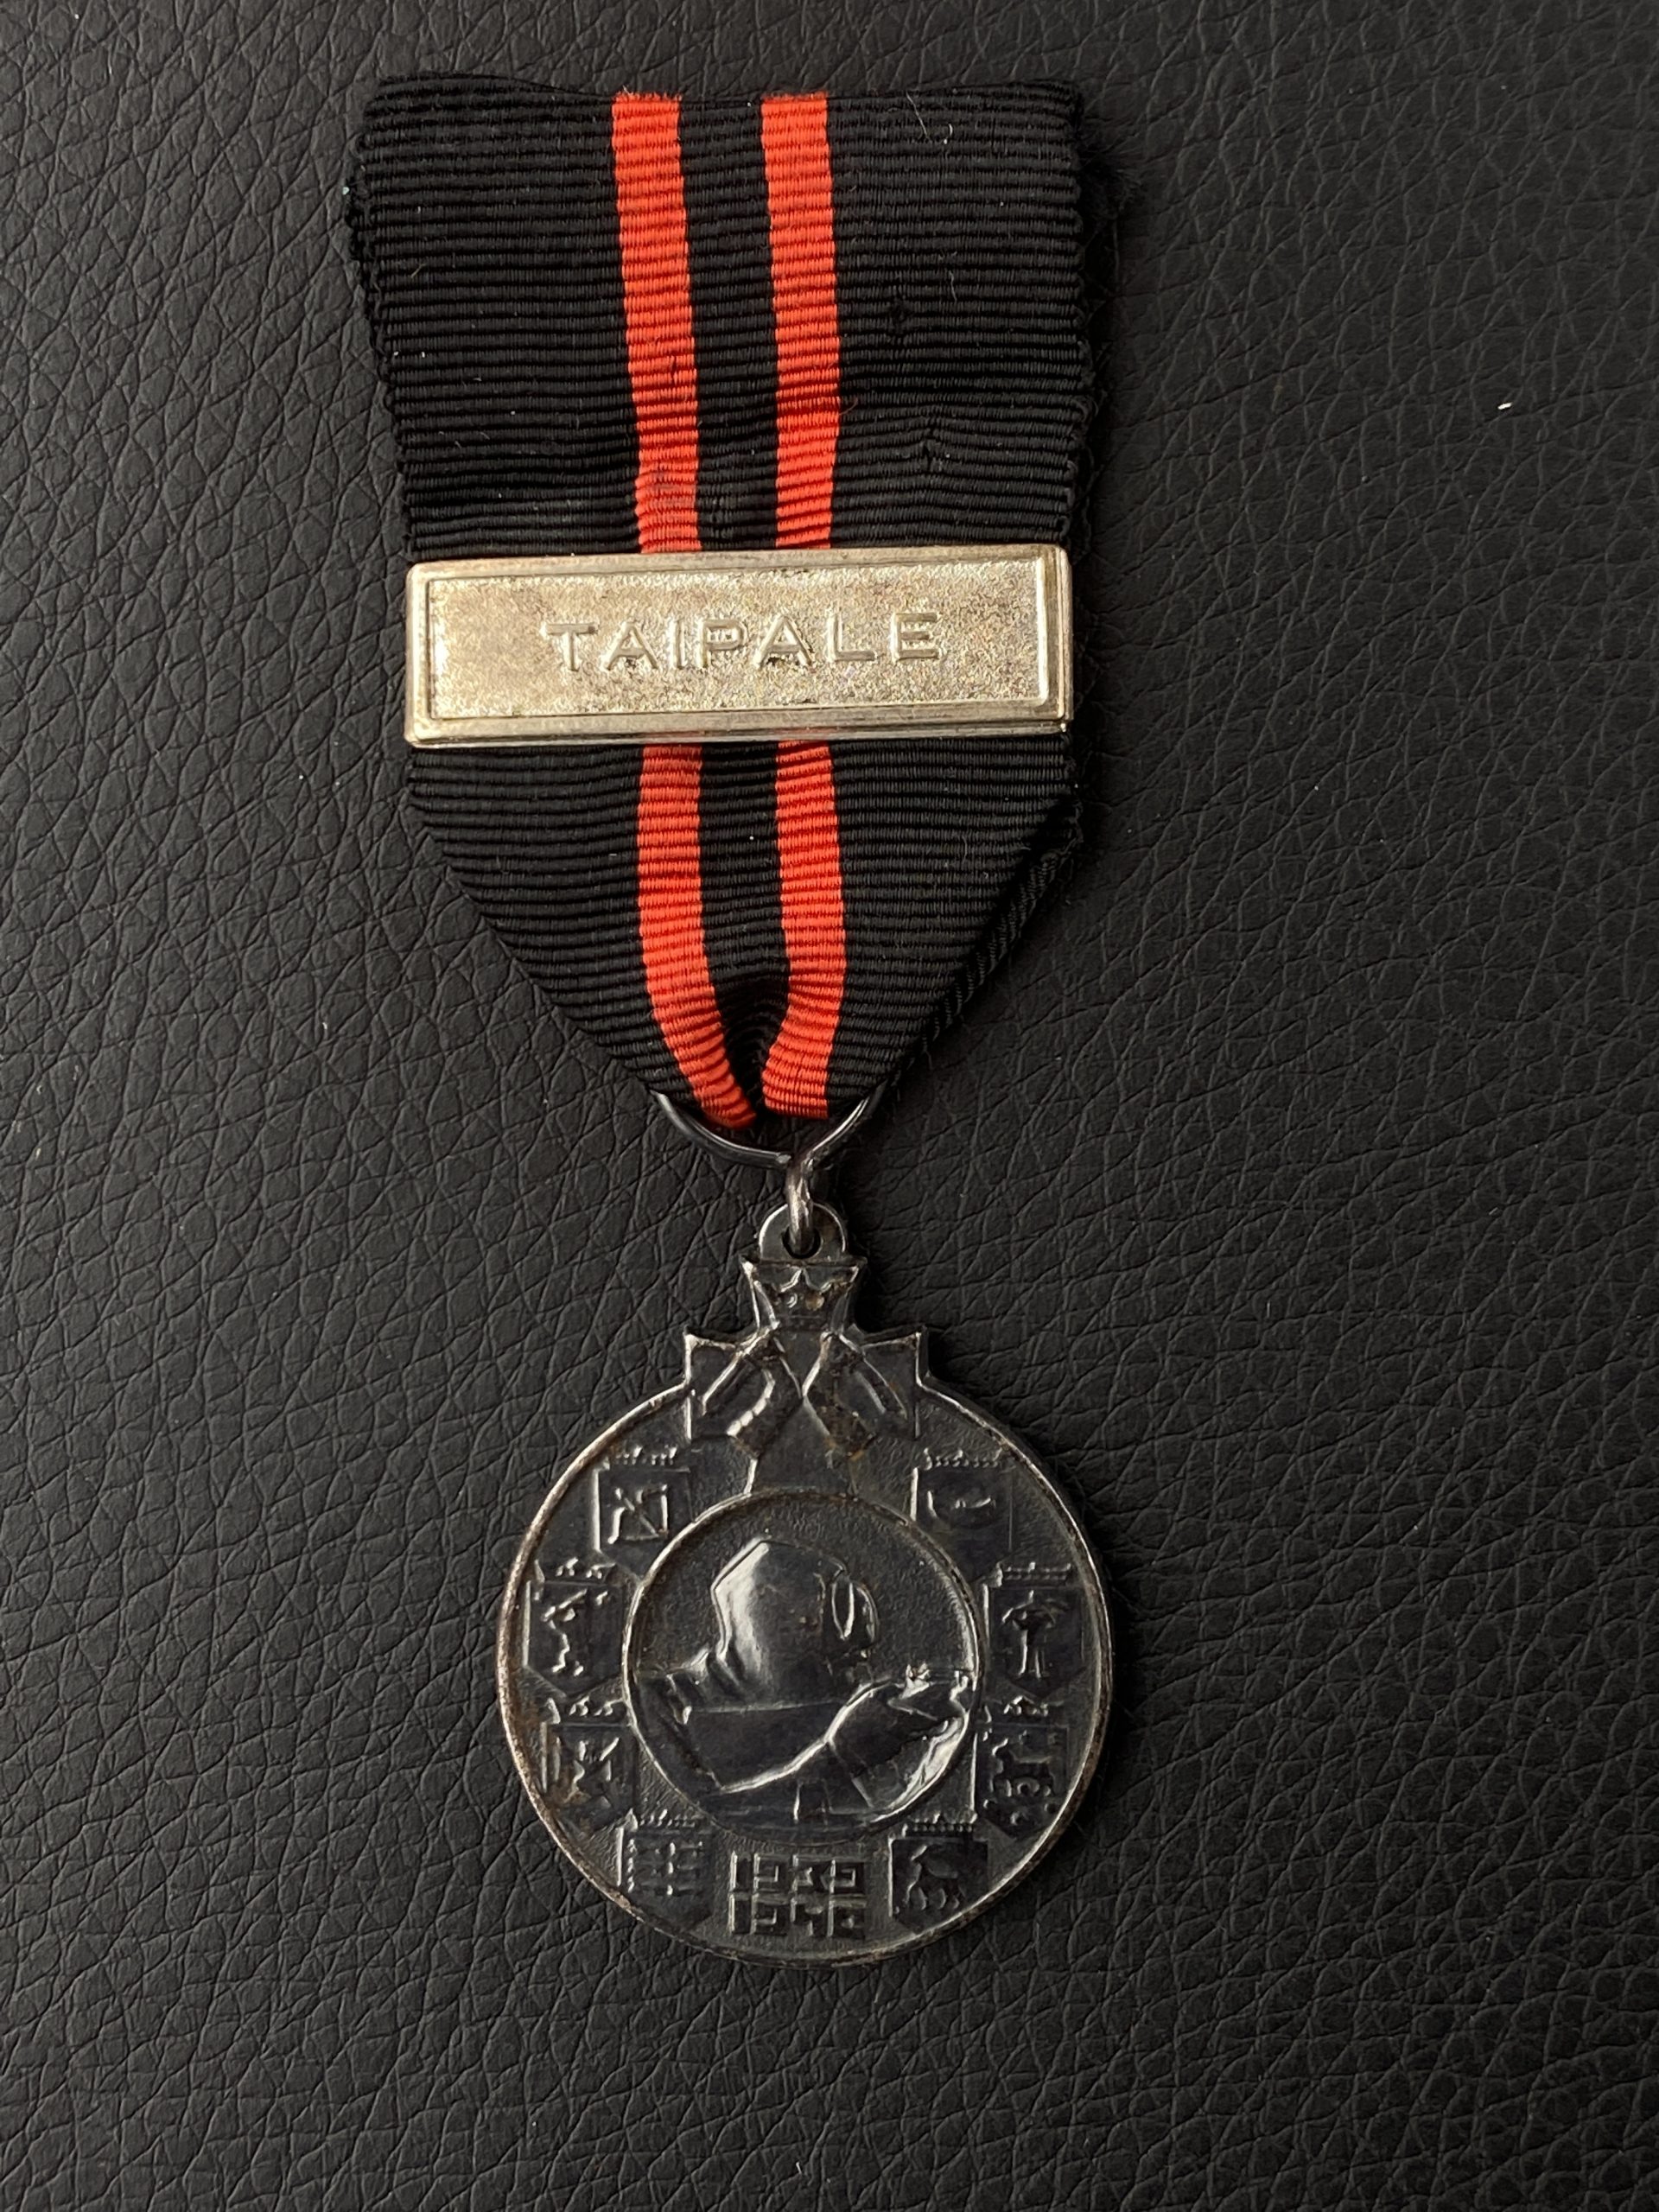 Медаль за зимнюю войну 1939-40гг. с планкой Тайпале.